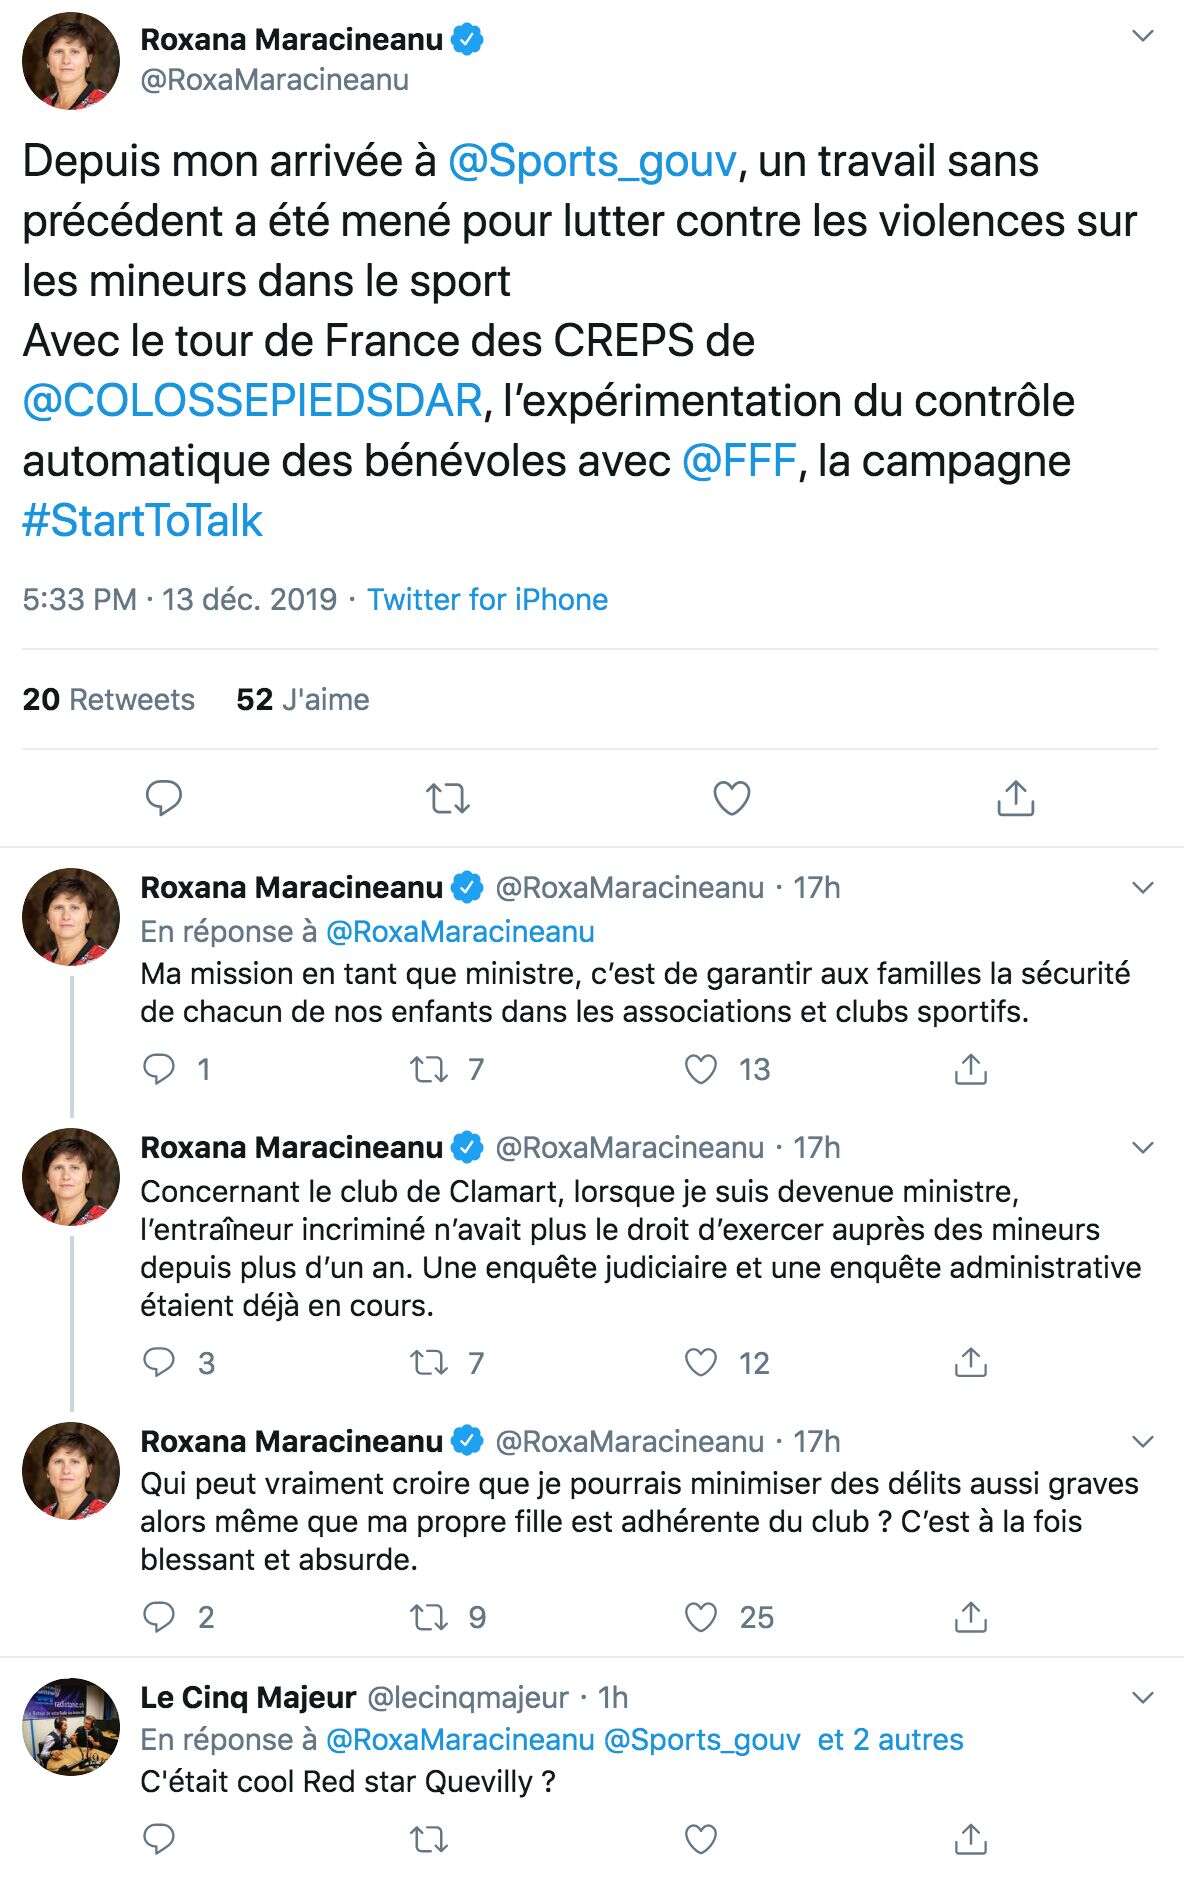 Tweets de la ministre Roxana Maracineanu à propos de la pédocriminalité dans le sport, au soir des incidents vendredi 13 décembre.